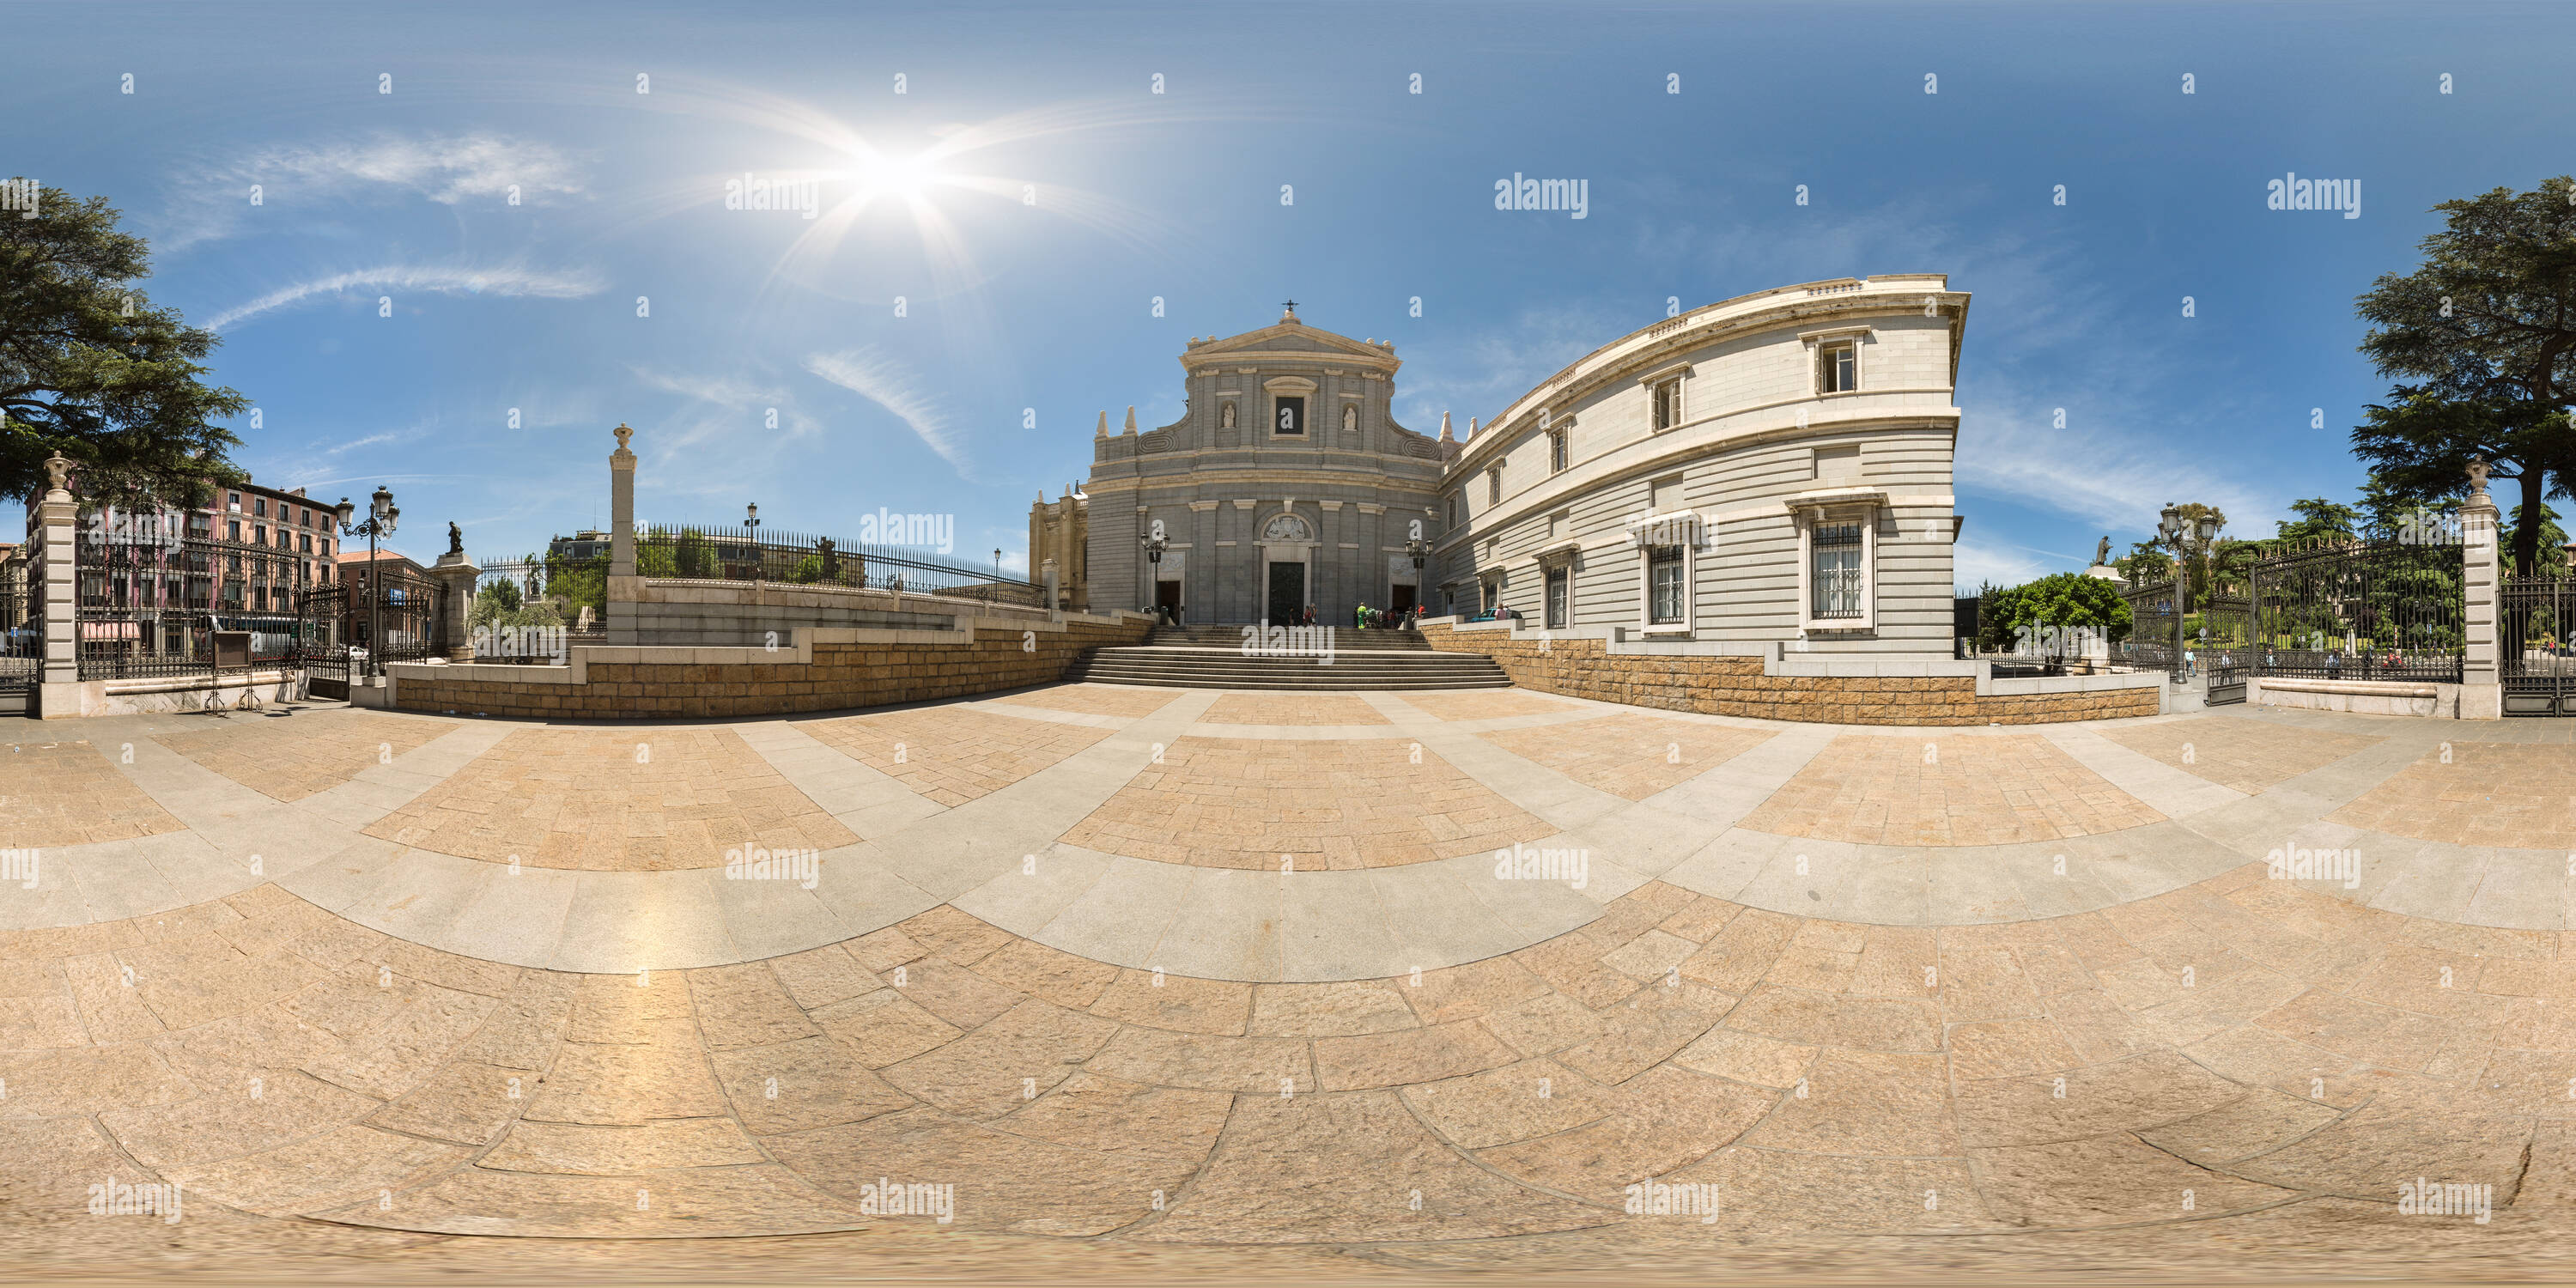 Vue panoramique à 360° de Parroquia Santa María de la Almudena 1. Madrid